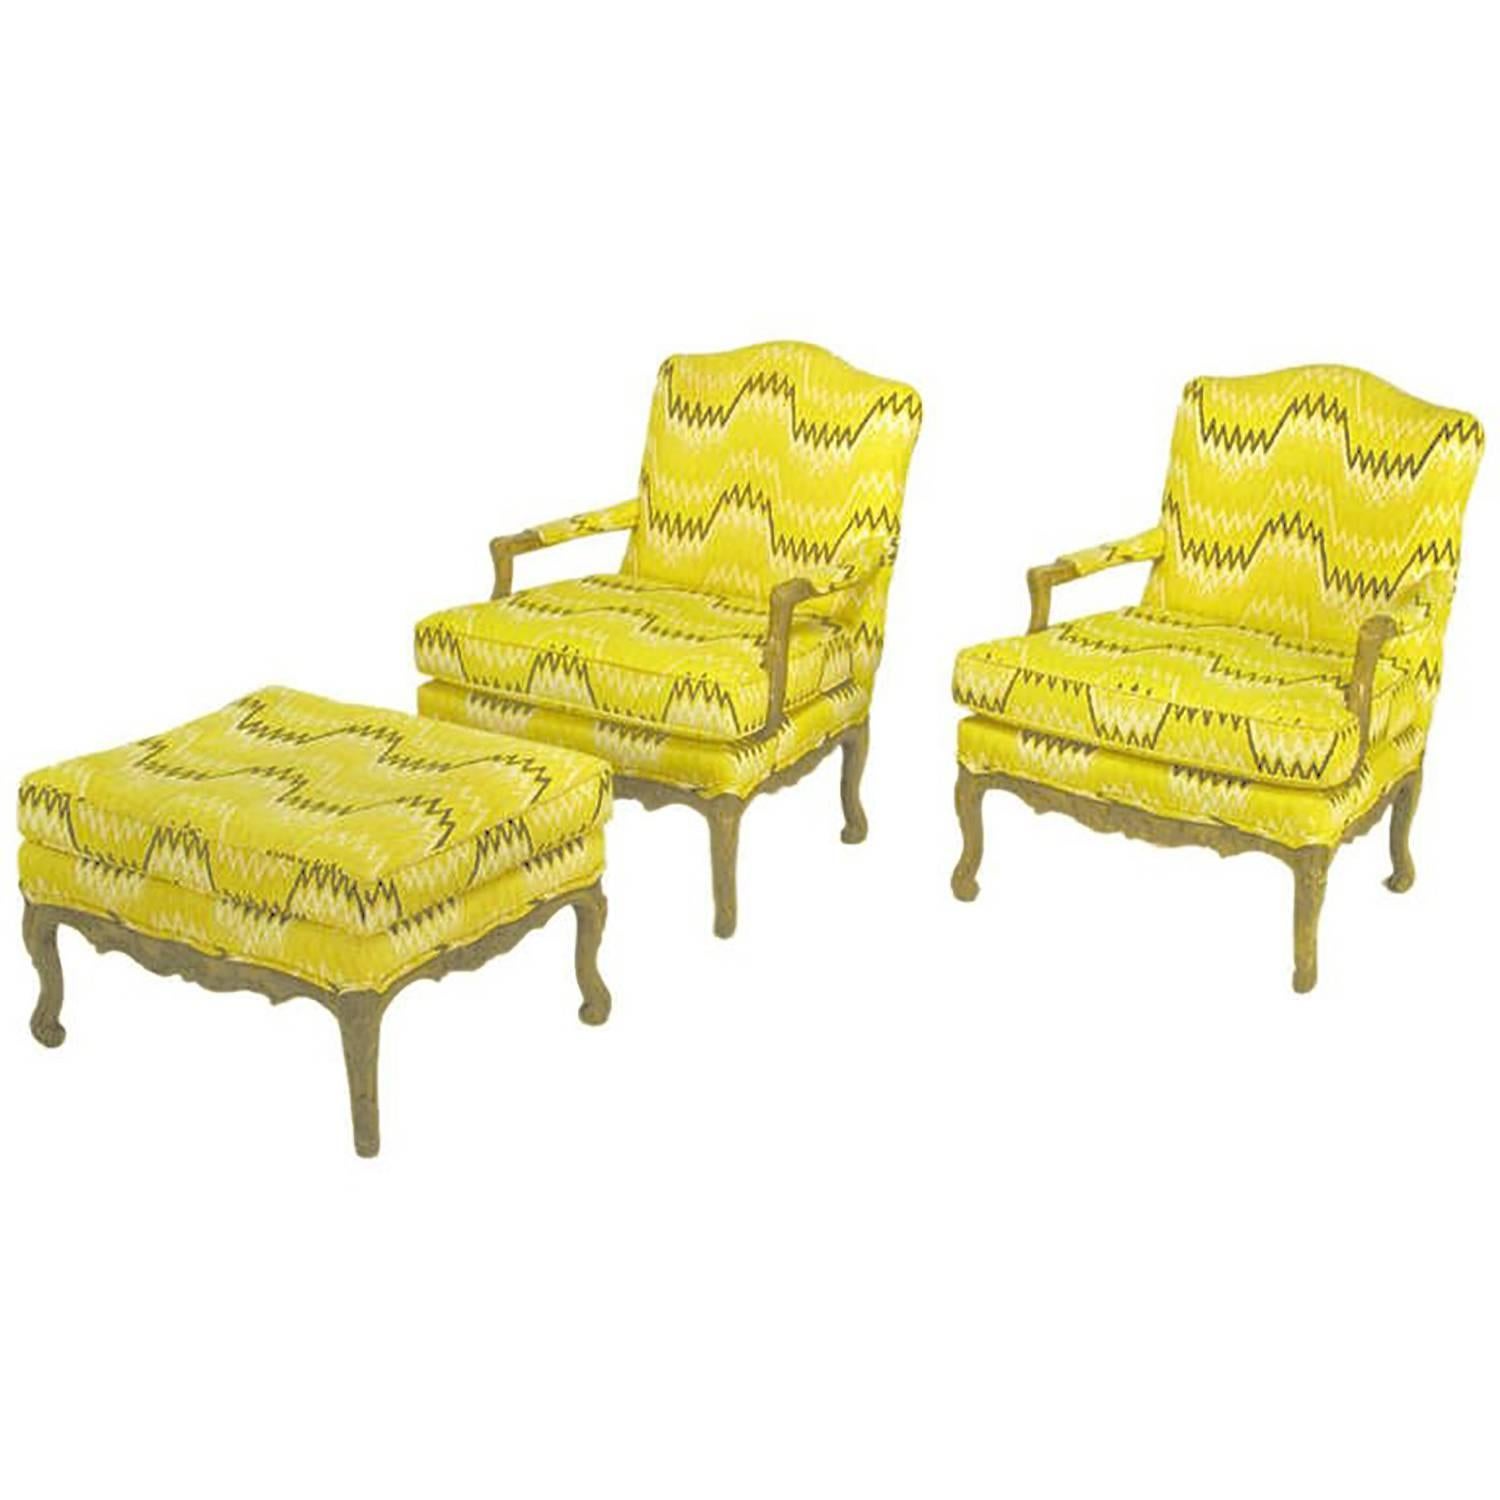 Paire de fauteuils Louis XV et pouf assorti en tapisserie de lin au point de flamme géométrique jaune auerolin, noir et blanc. Les cadres en bois sculpté ont été laqués et vieillis pour ressembler à un bois fruitier clair et vieilli.
Le pouf mesure